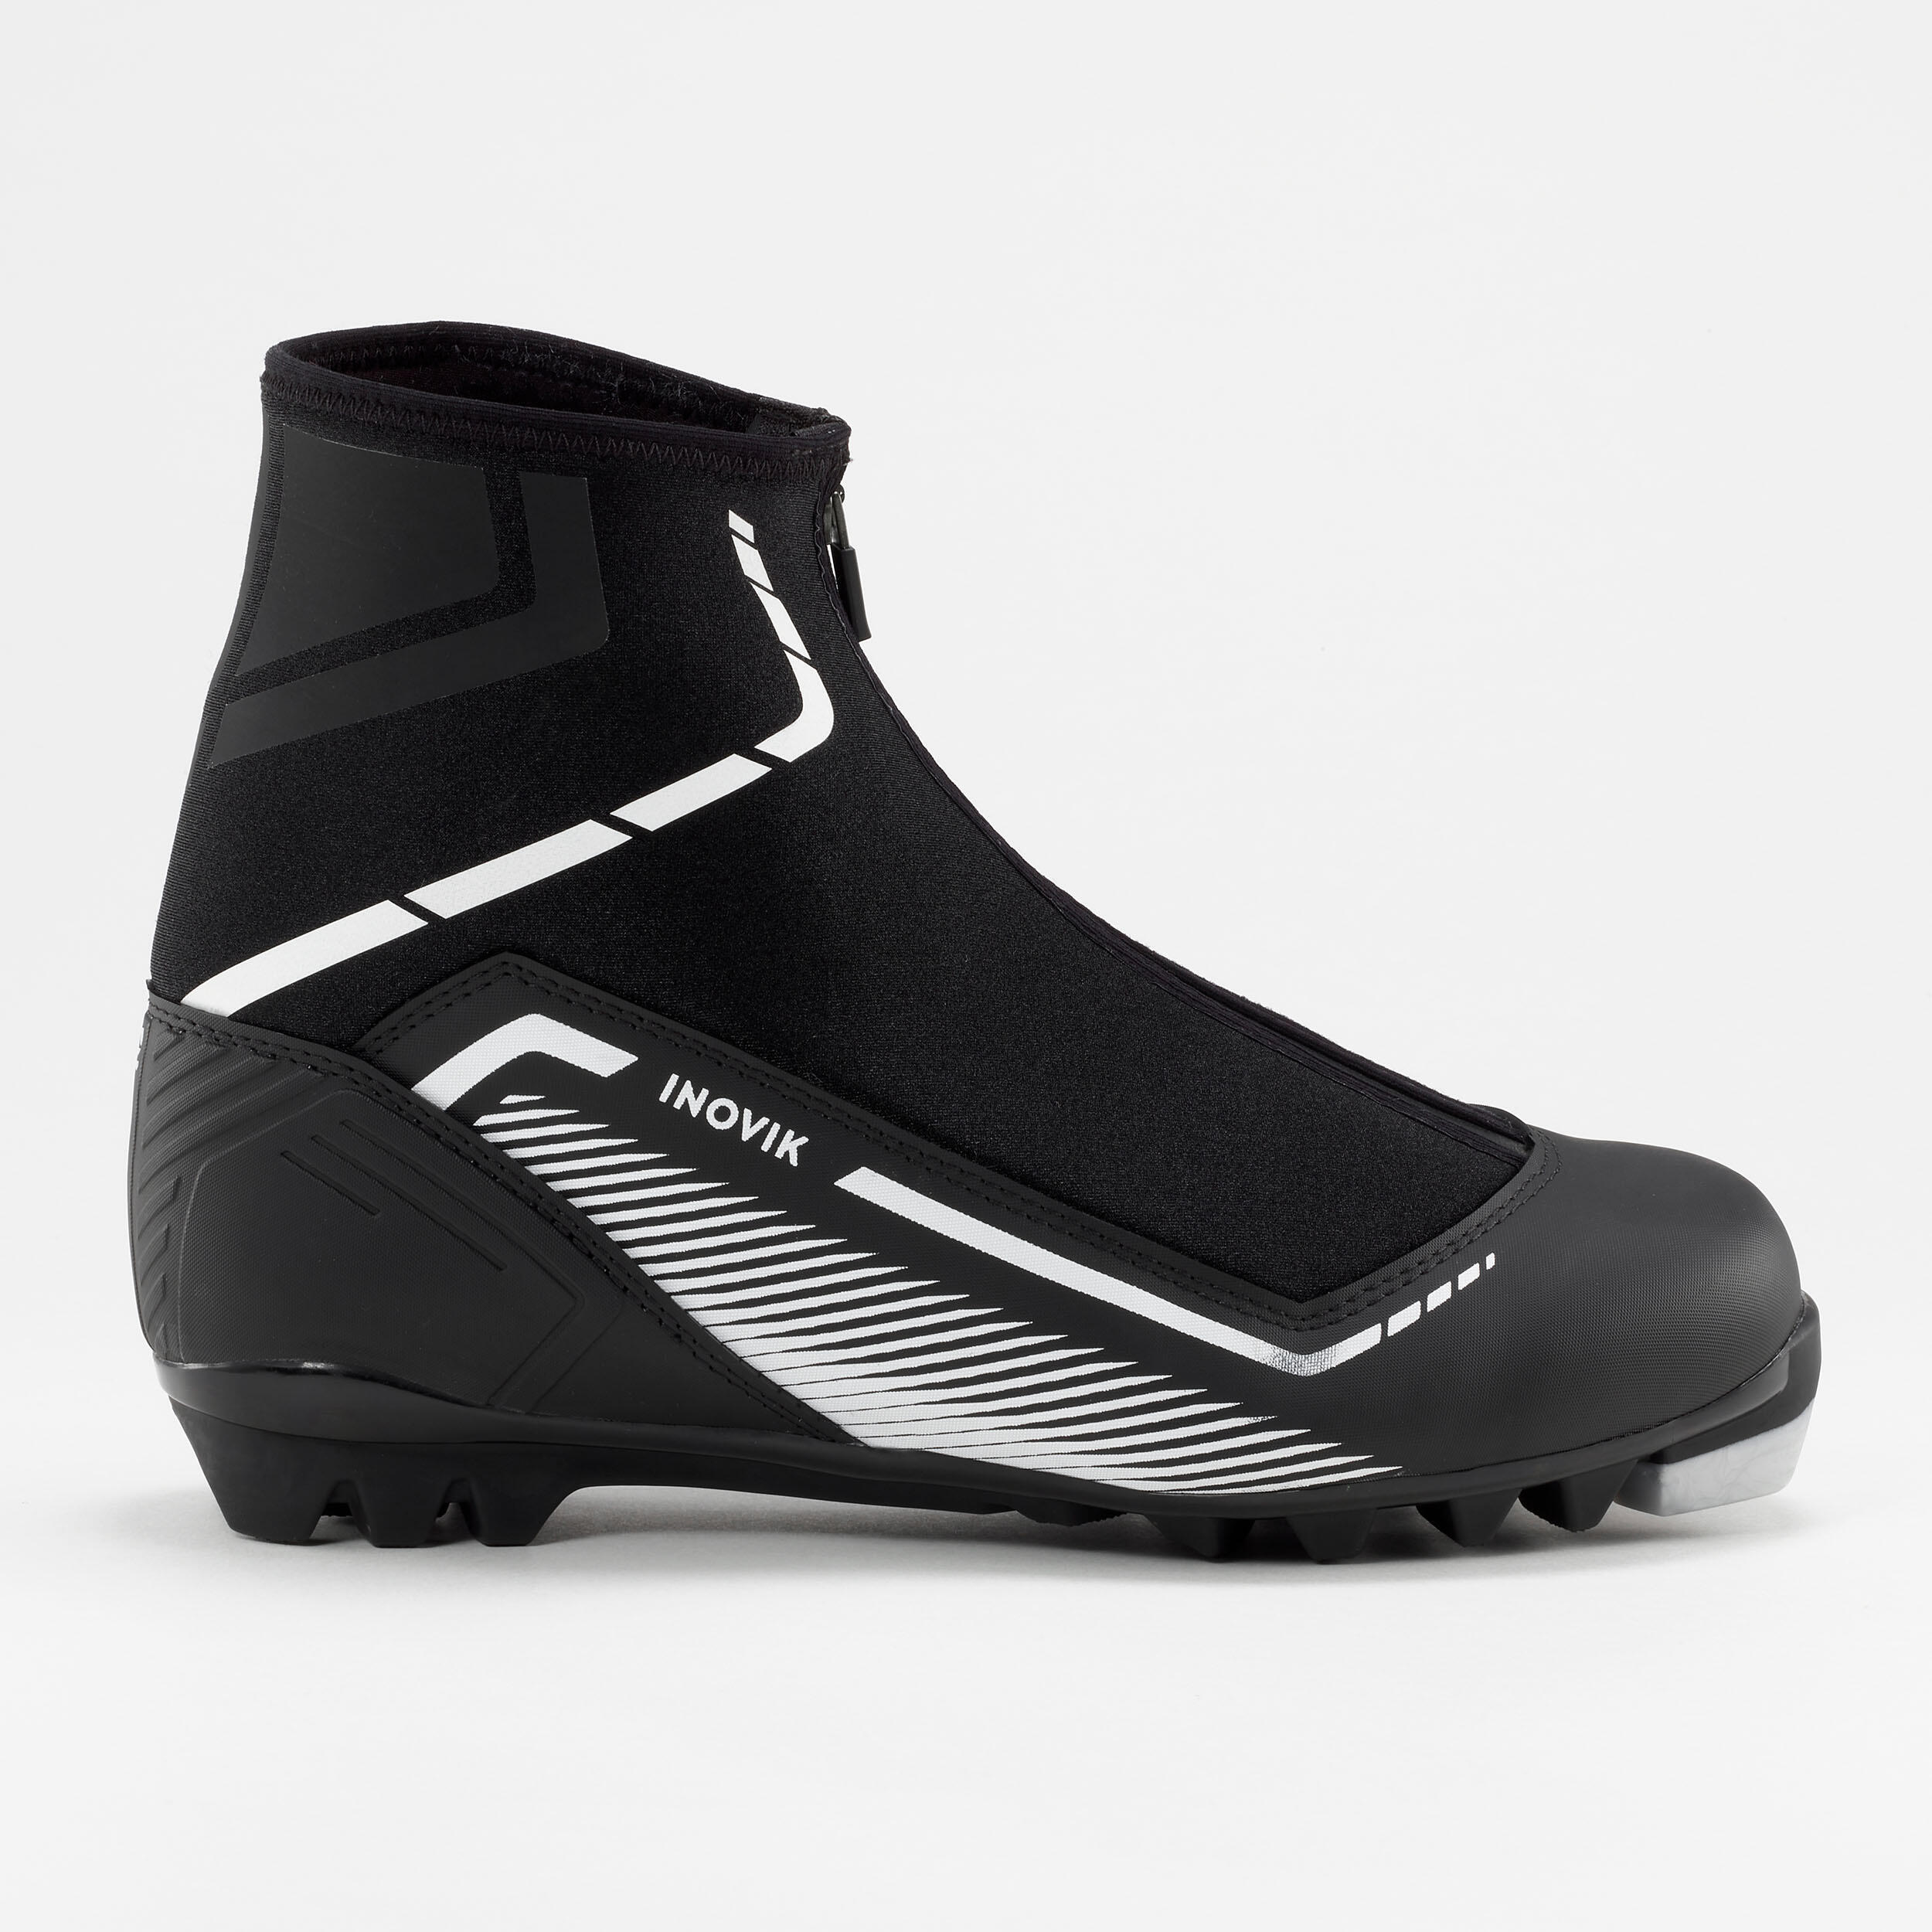 Лыжные ботинки Decathlon Inovik XC S150, черный operasei обувь на шнурках